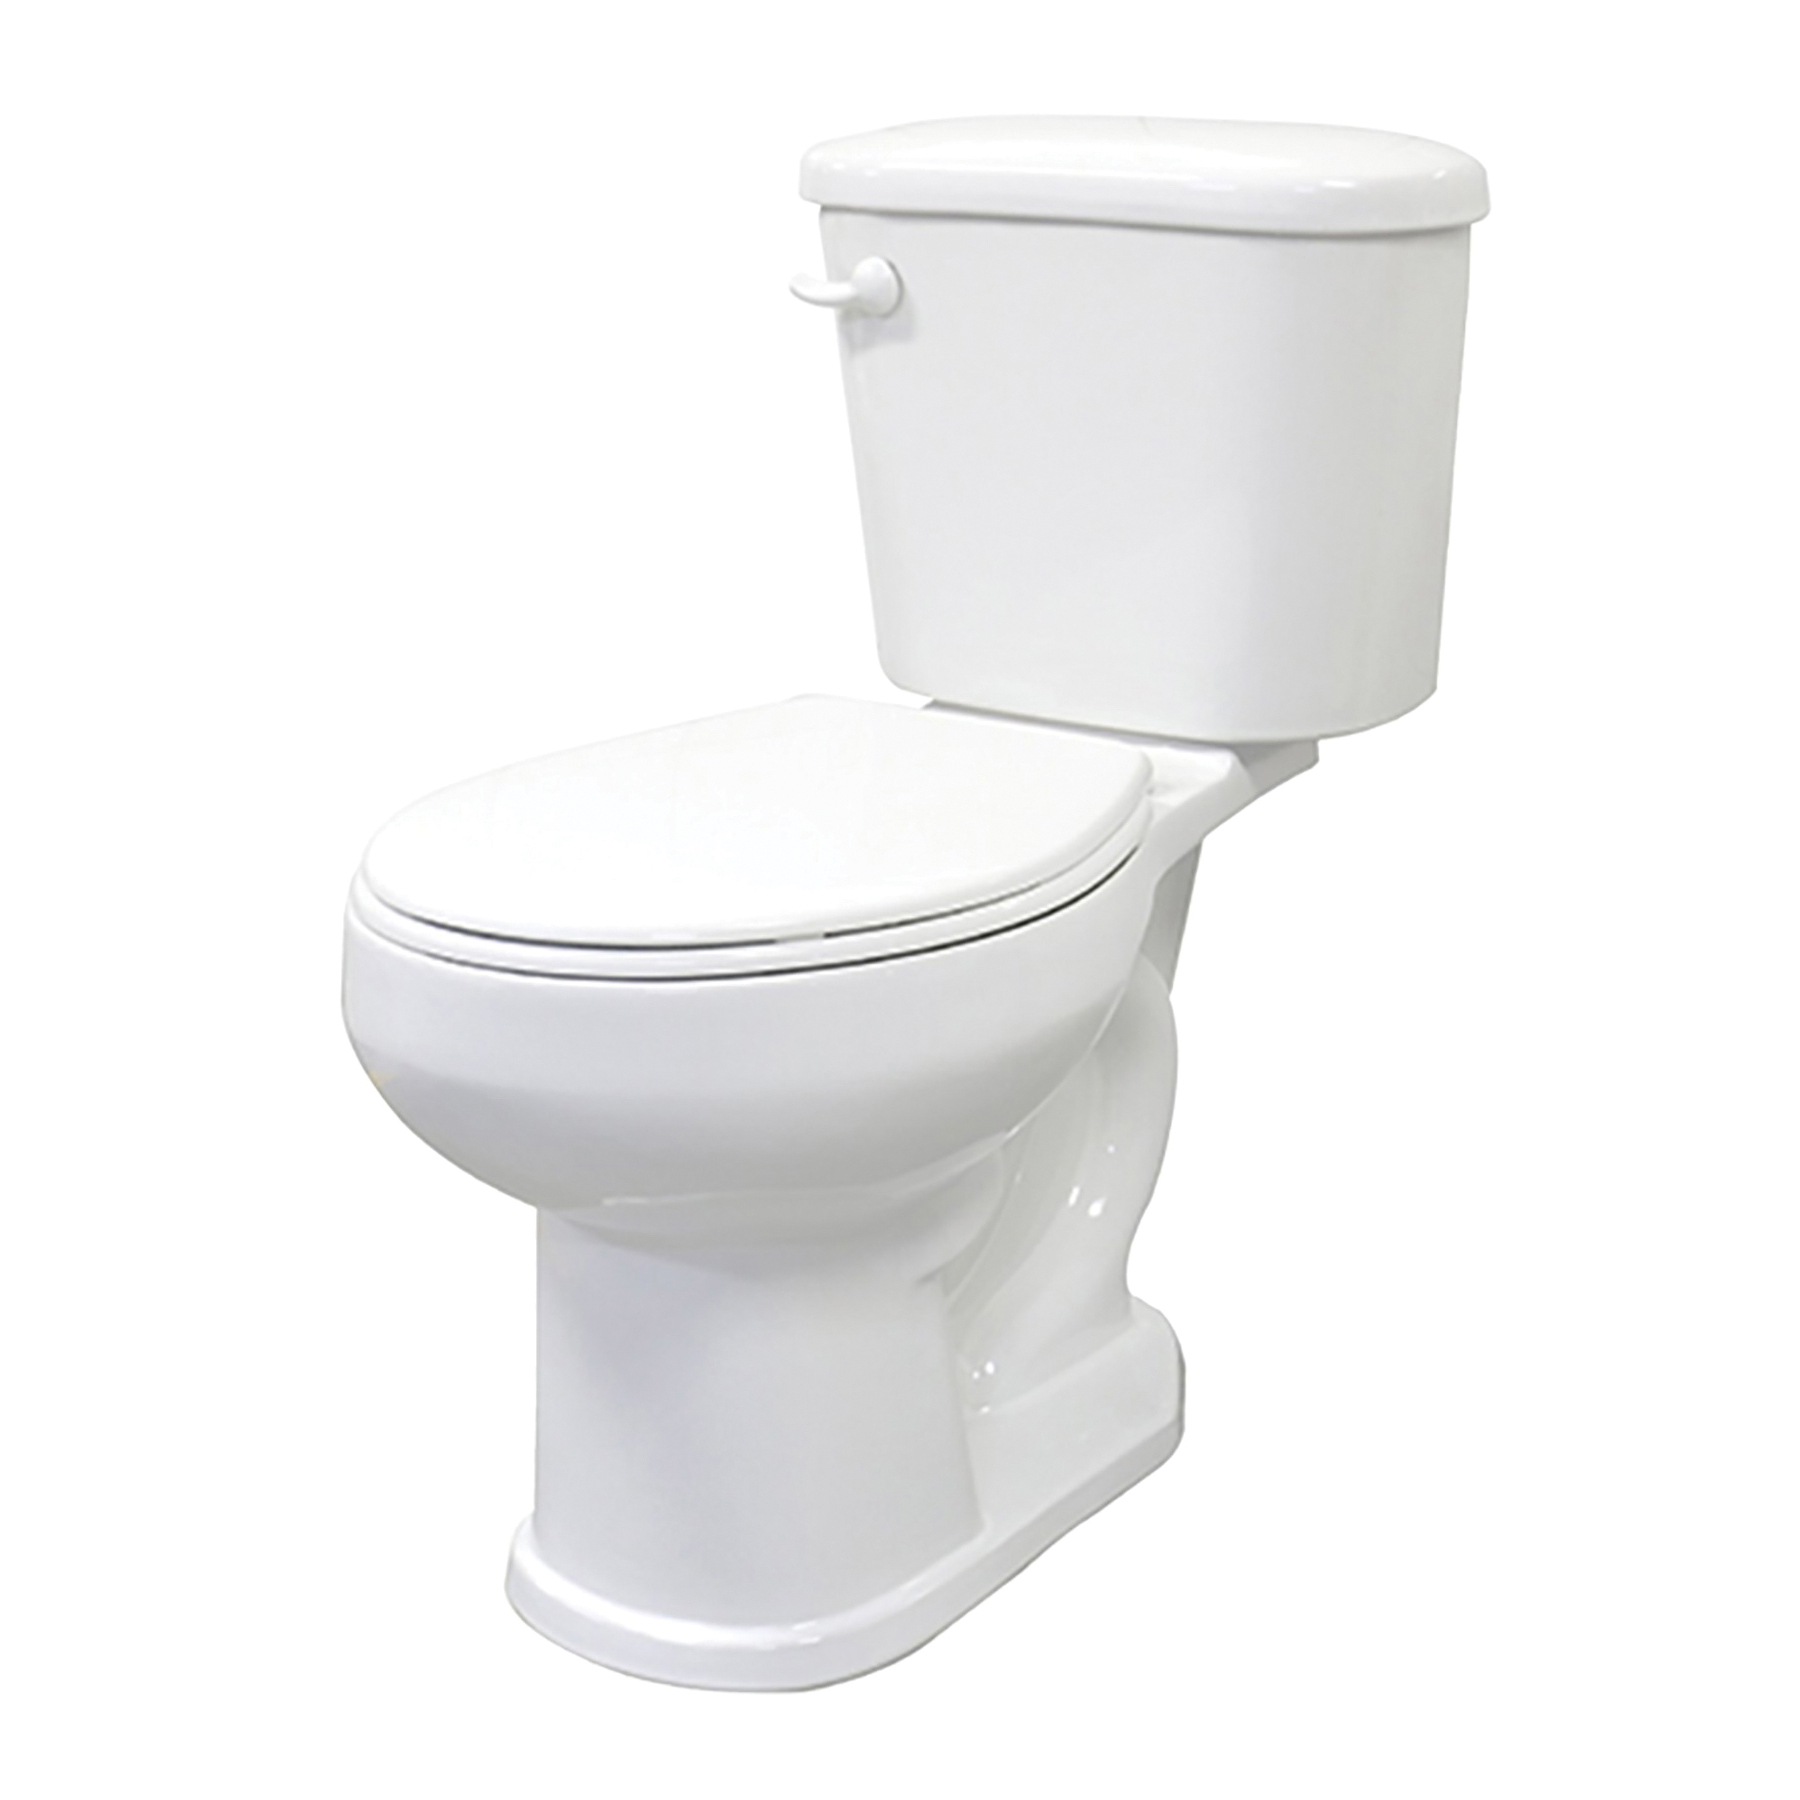 J0052013120 Toilet, Round Bowl, 1.6 gpf Flush, 15 in H Rim, White